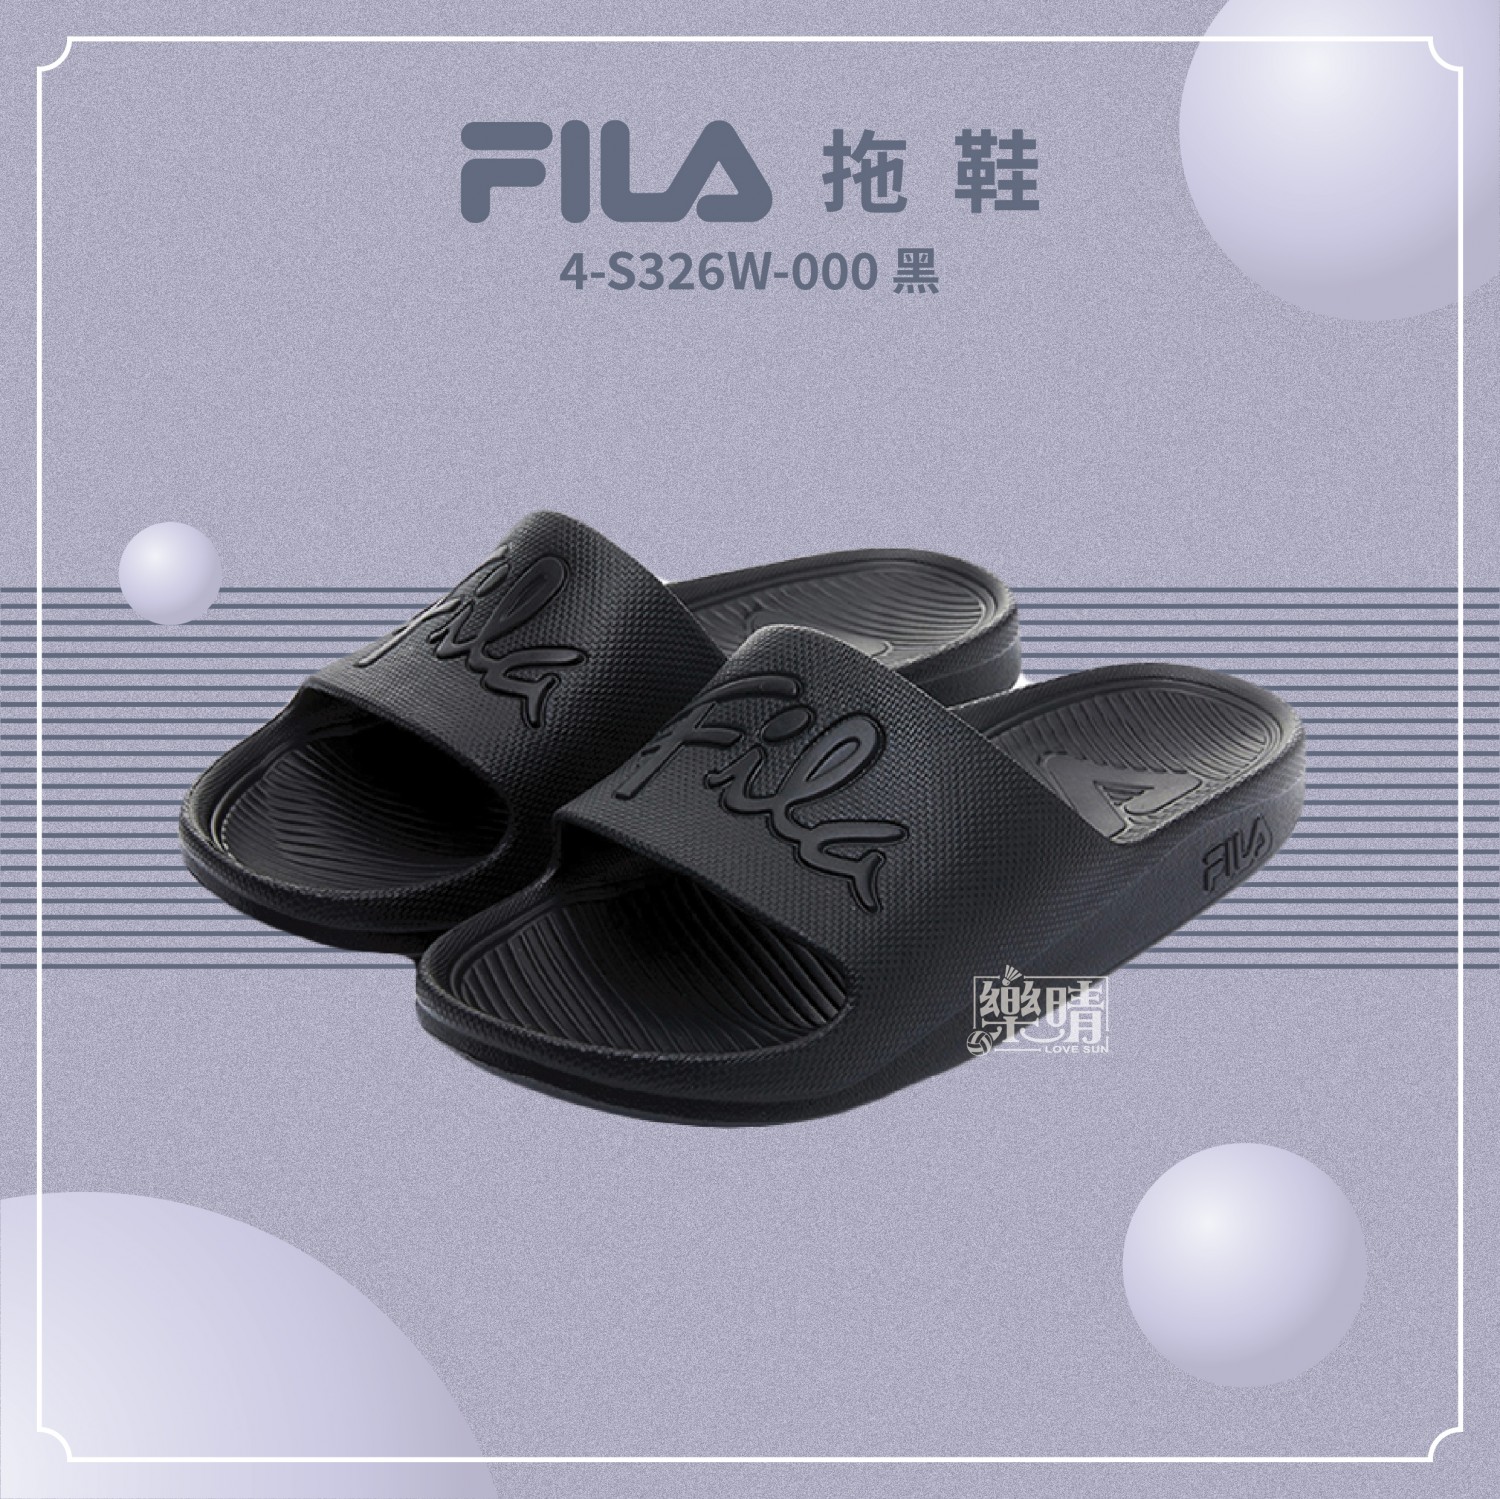 FILA 拖鞋 4-S326W-000